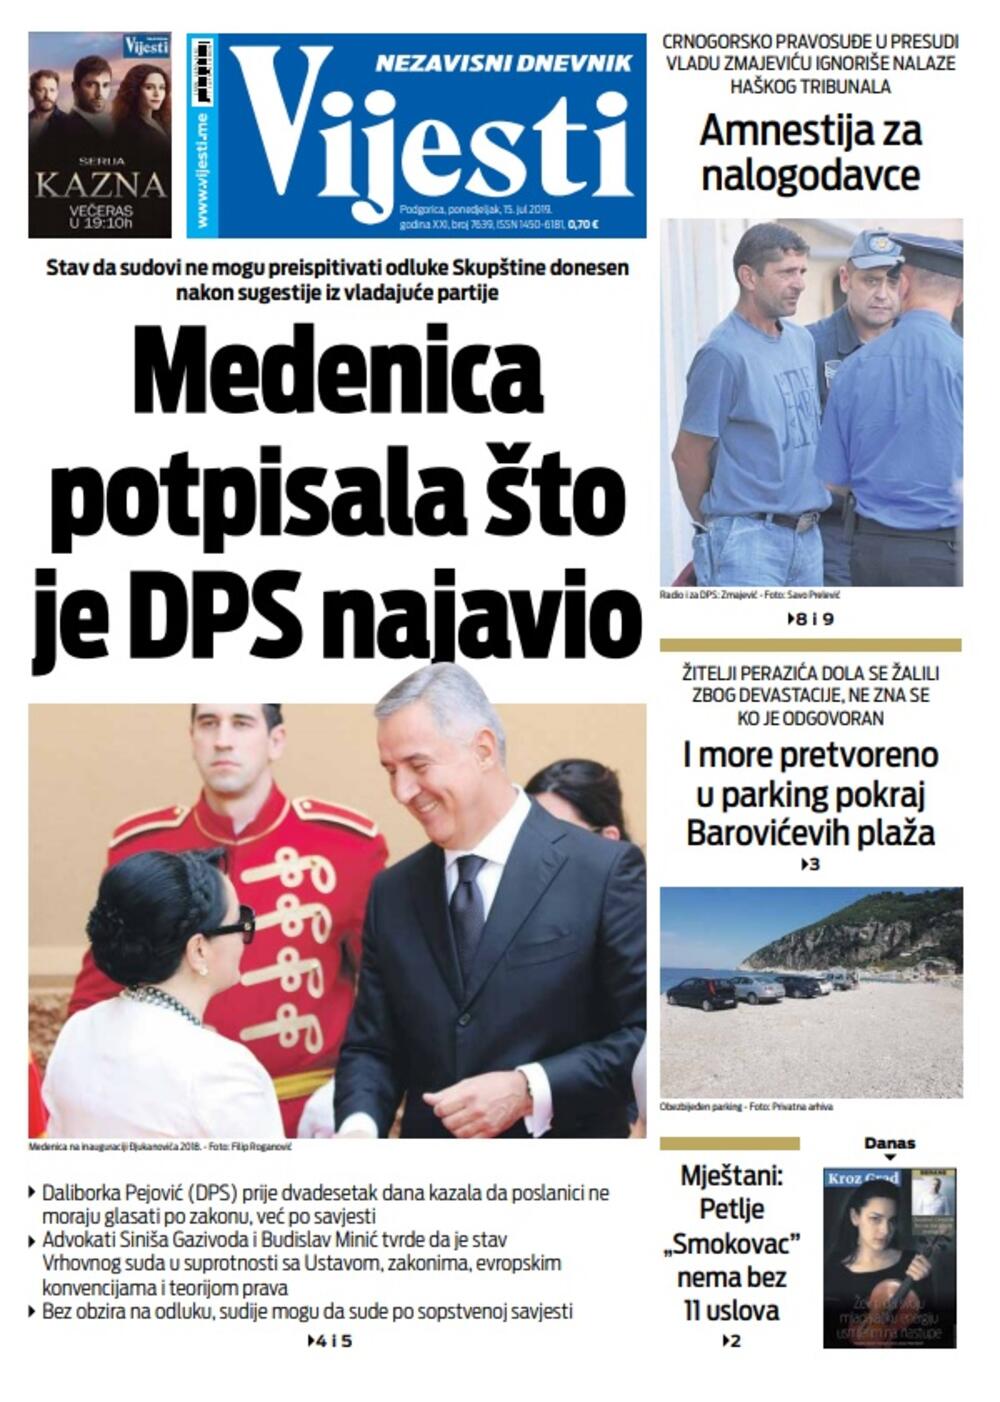 Naslovna strana  "Vijesti" 15.7., Foto: Vijesti